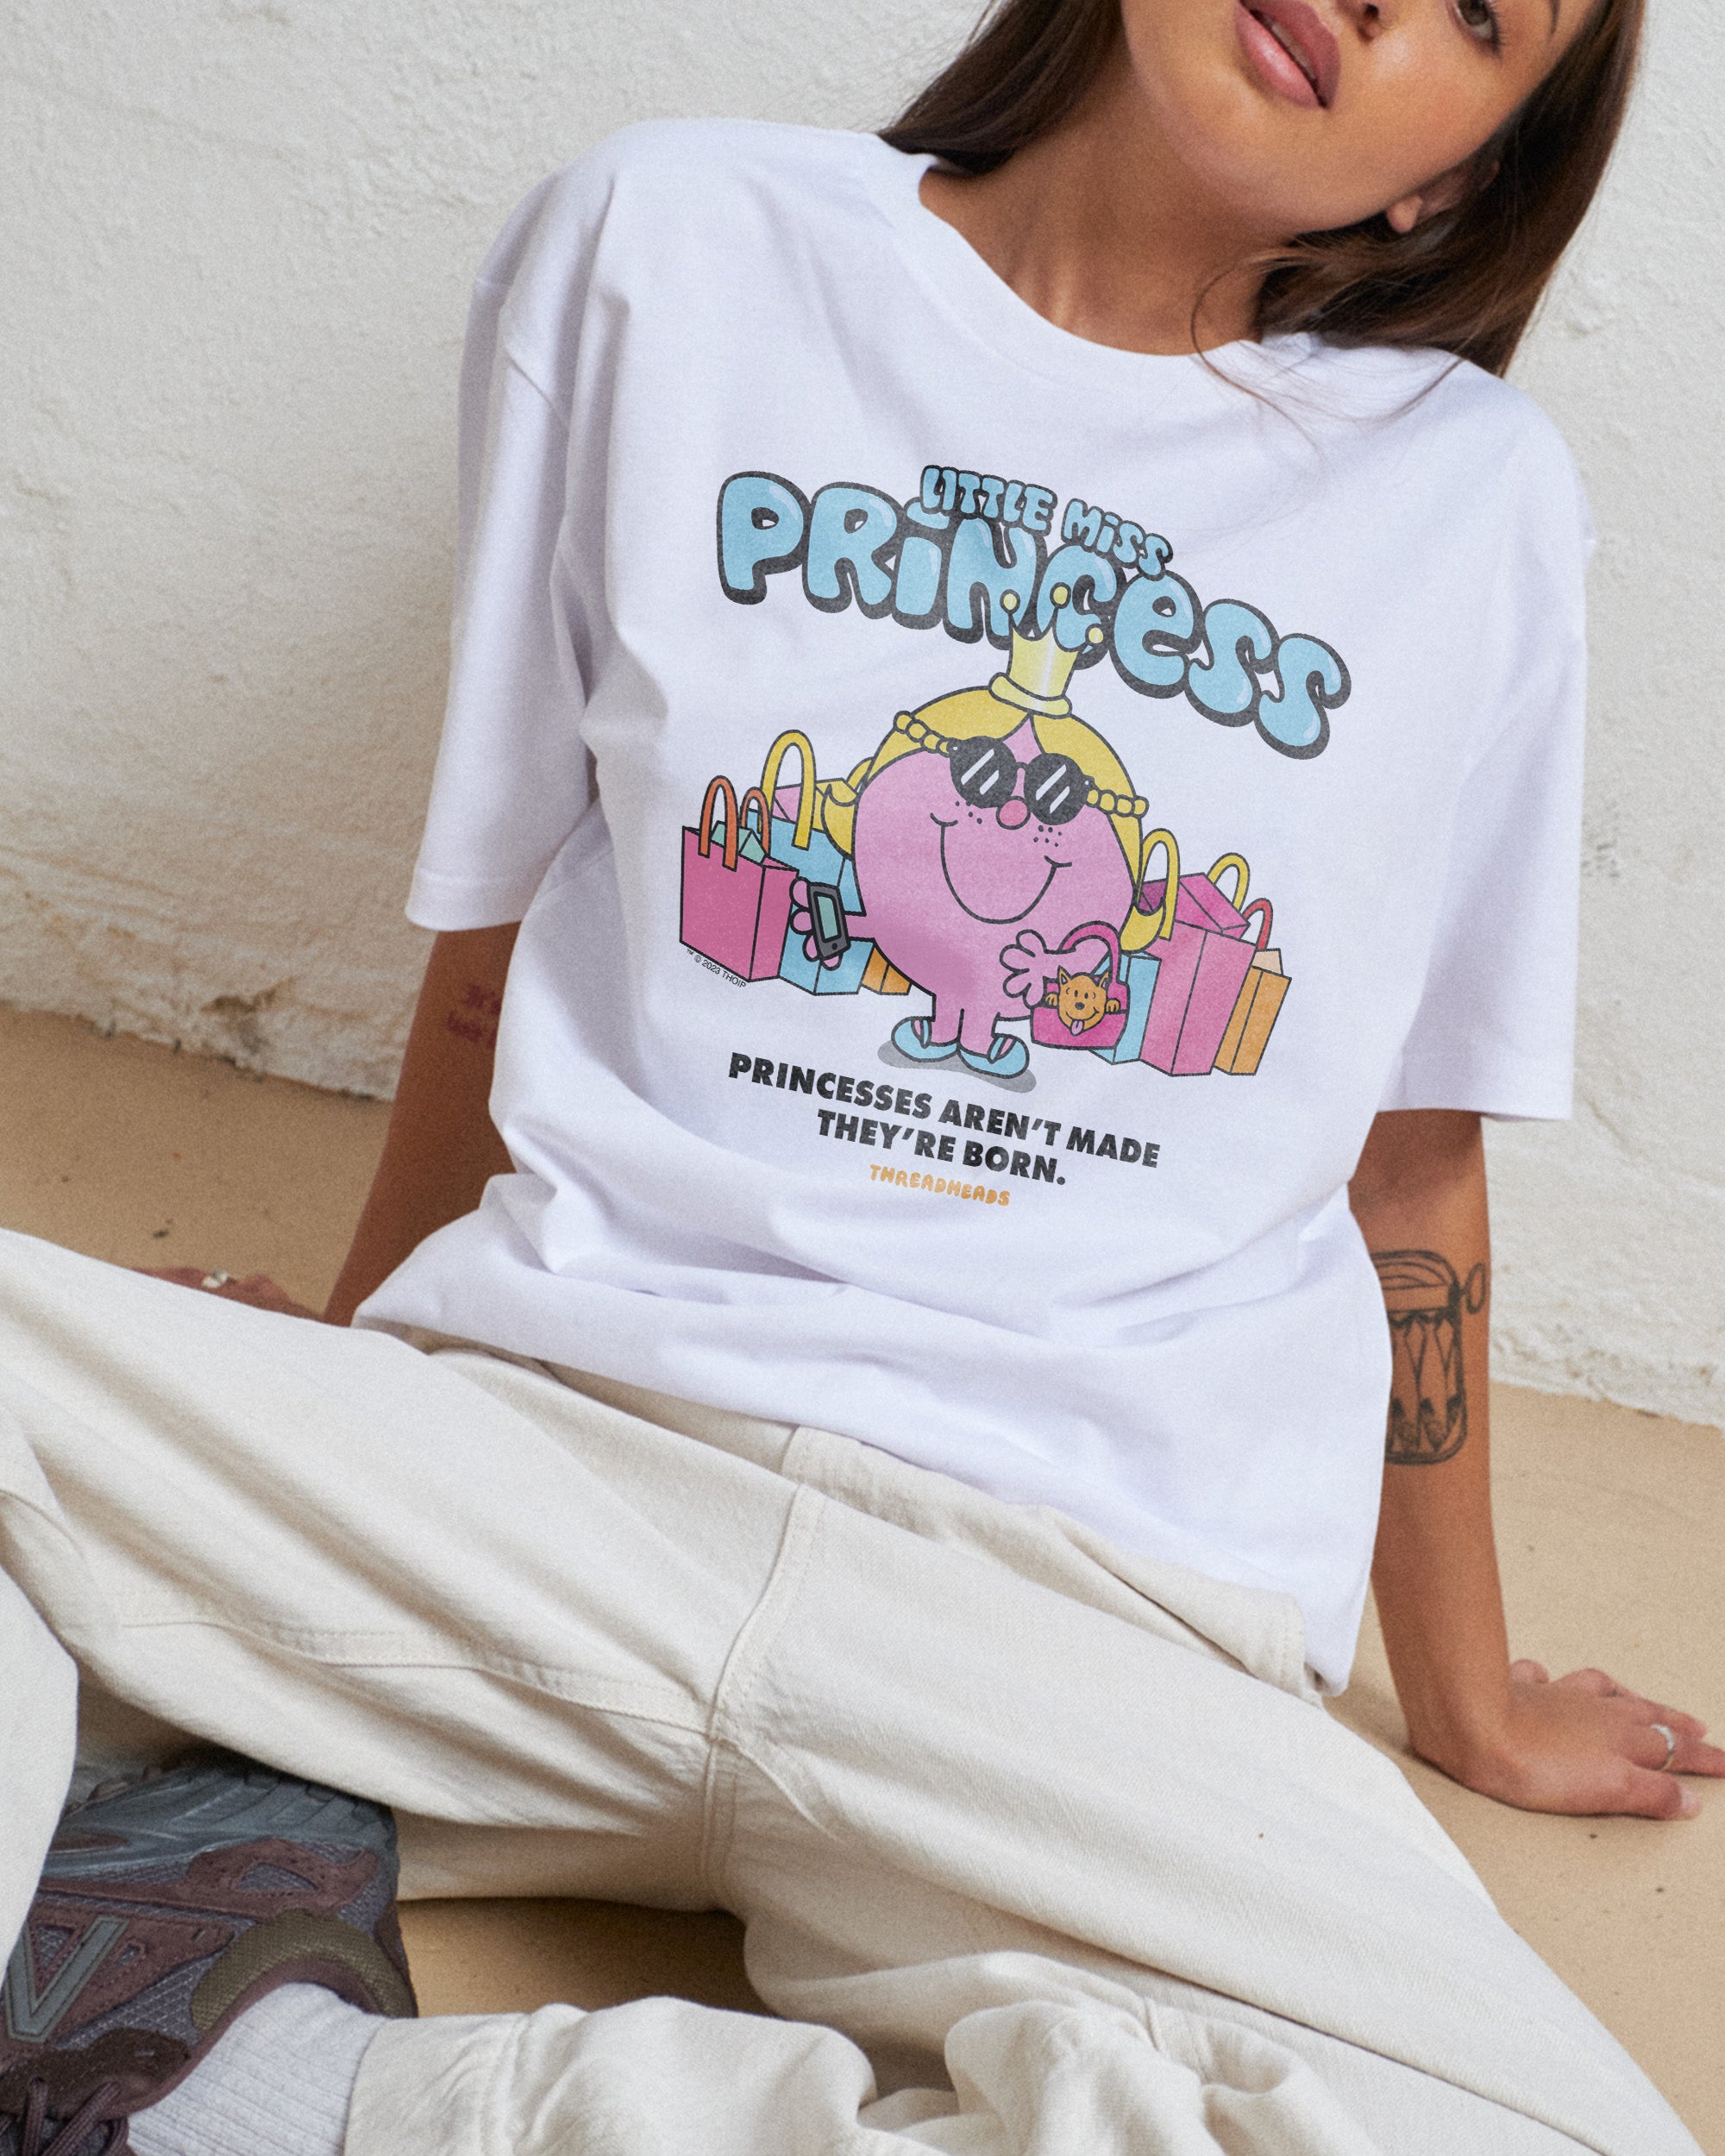 Little Miss Princess T-Shirt